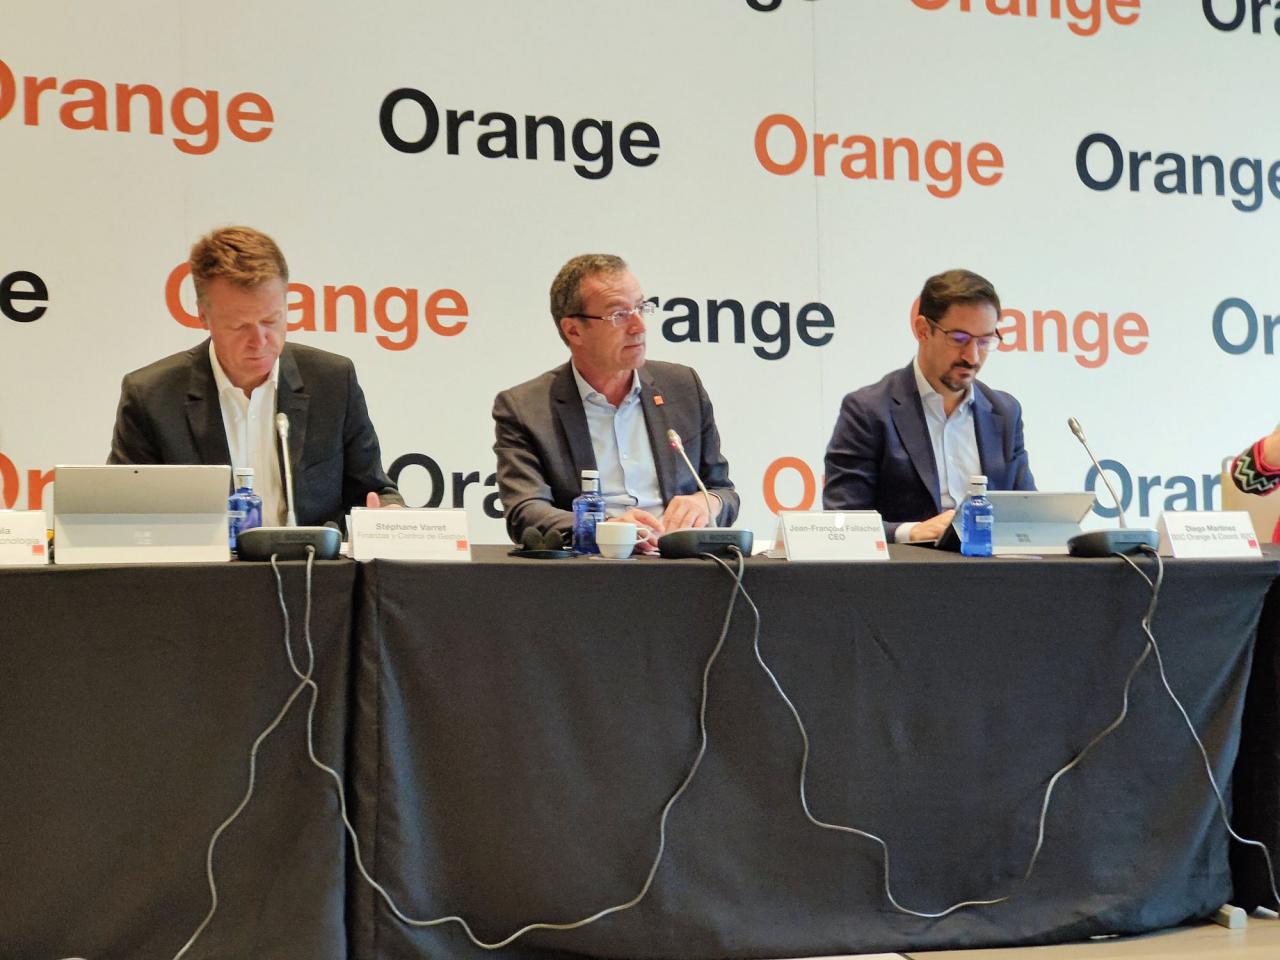 El equipo directivo de Orange España presenta los resultados económicos relativos al tercer trimestre de 2022